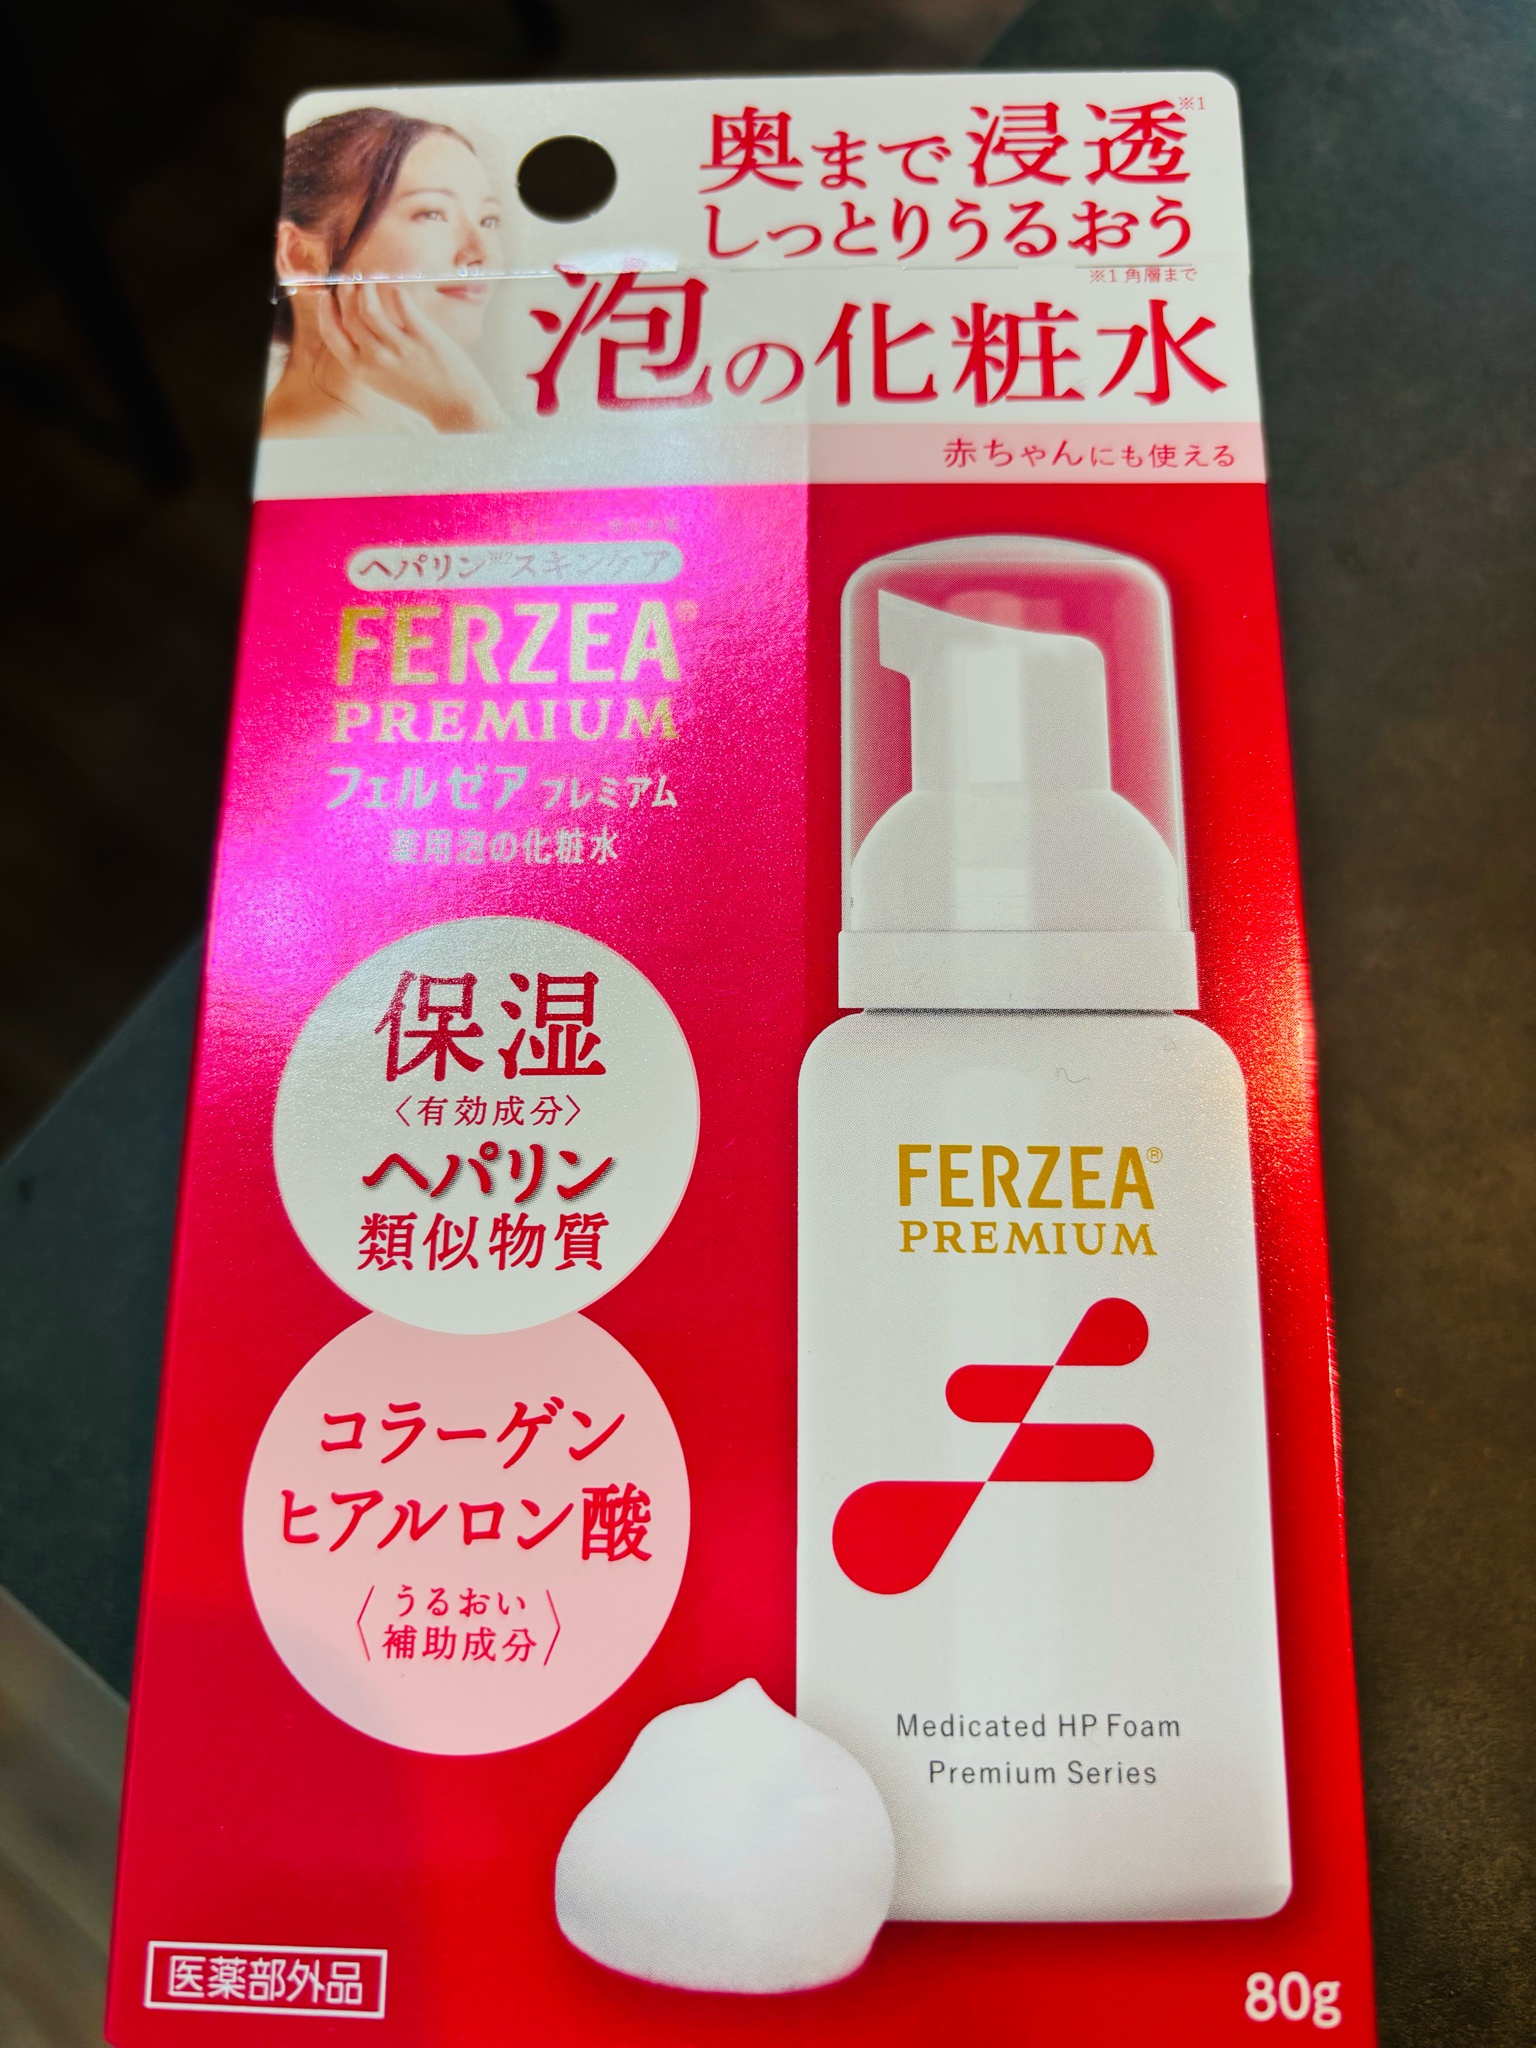 フェルゼア / フェルゼアプレミアム 薬用泡の化粧水の公式商品情報 